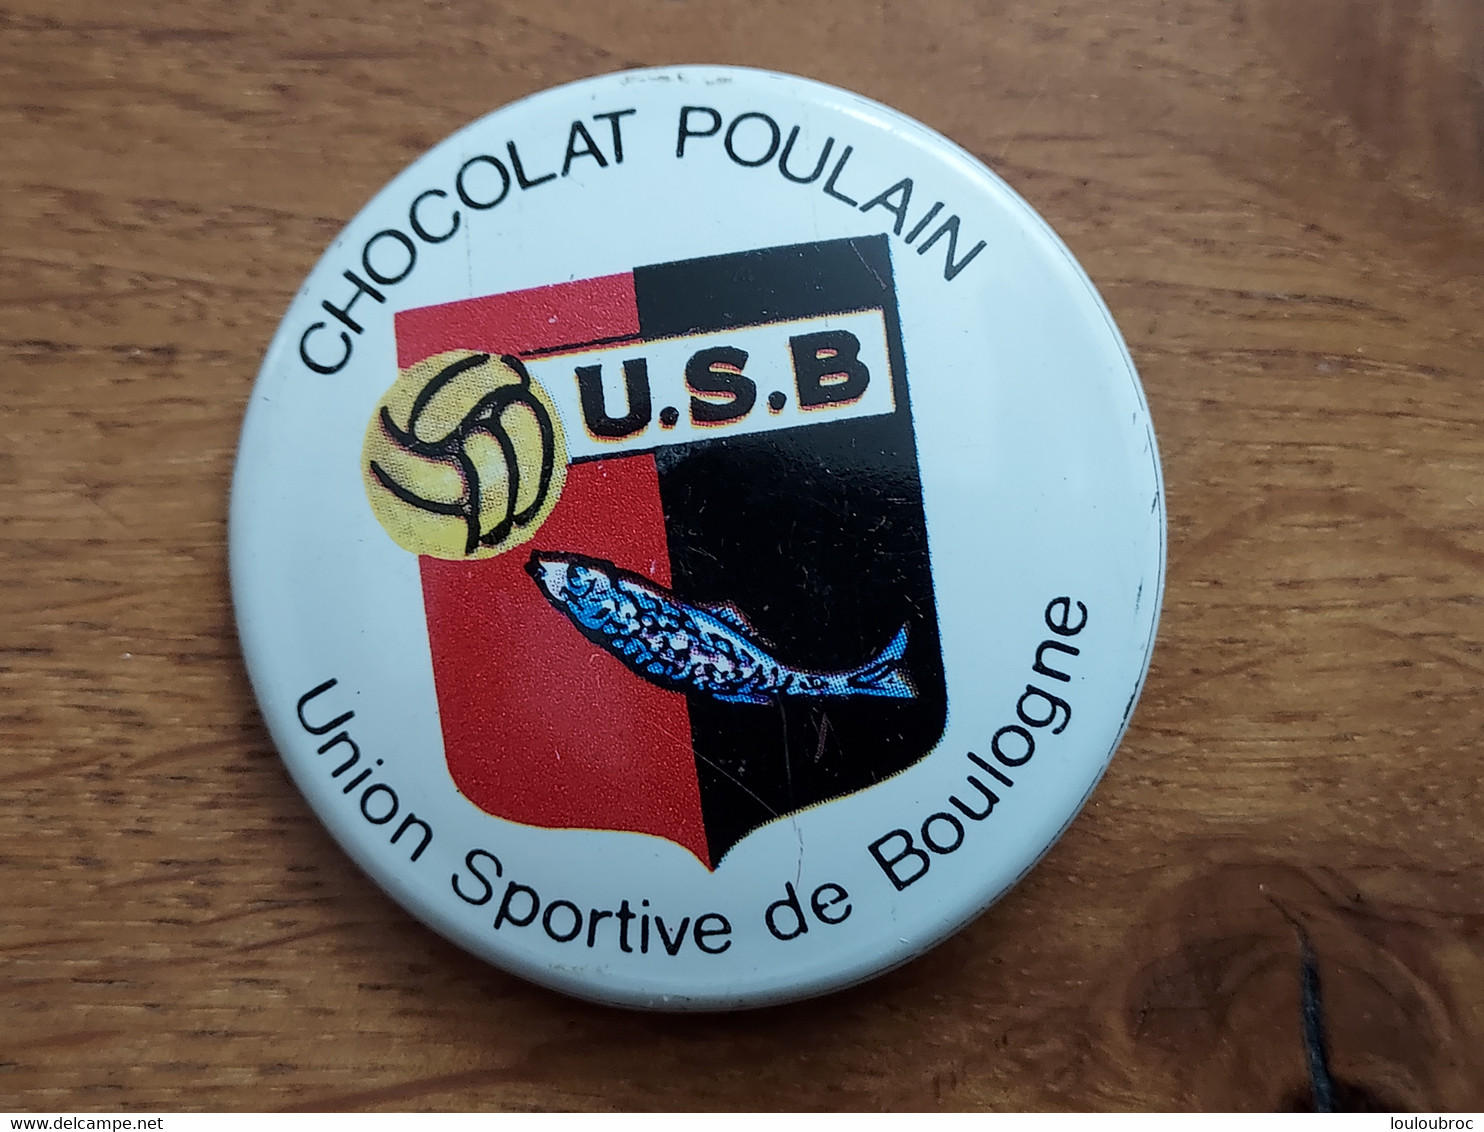 CHOCOLAT POULAIN Badge Tôle Sérigraphiée UNION SPORTIVE DE BOULOGNE U.S.B. - Chocolat